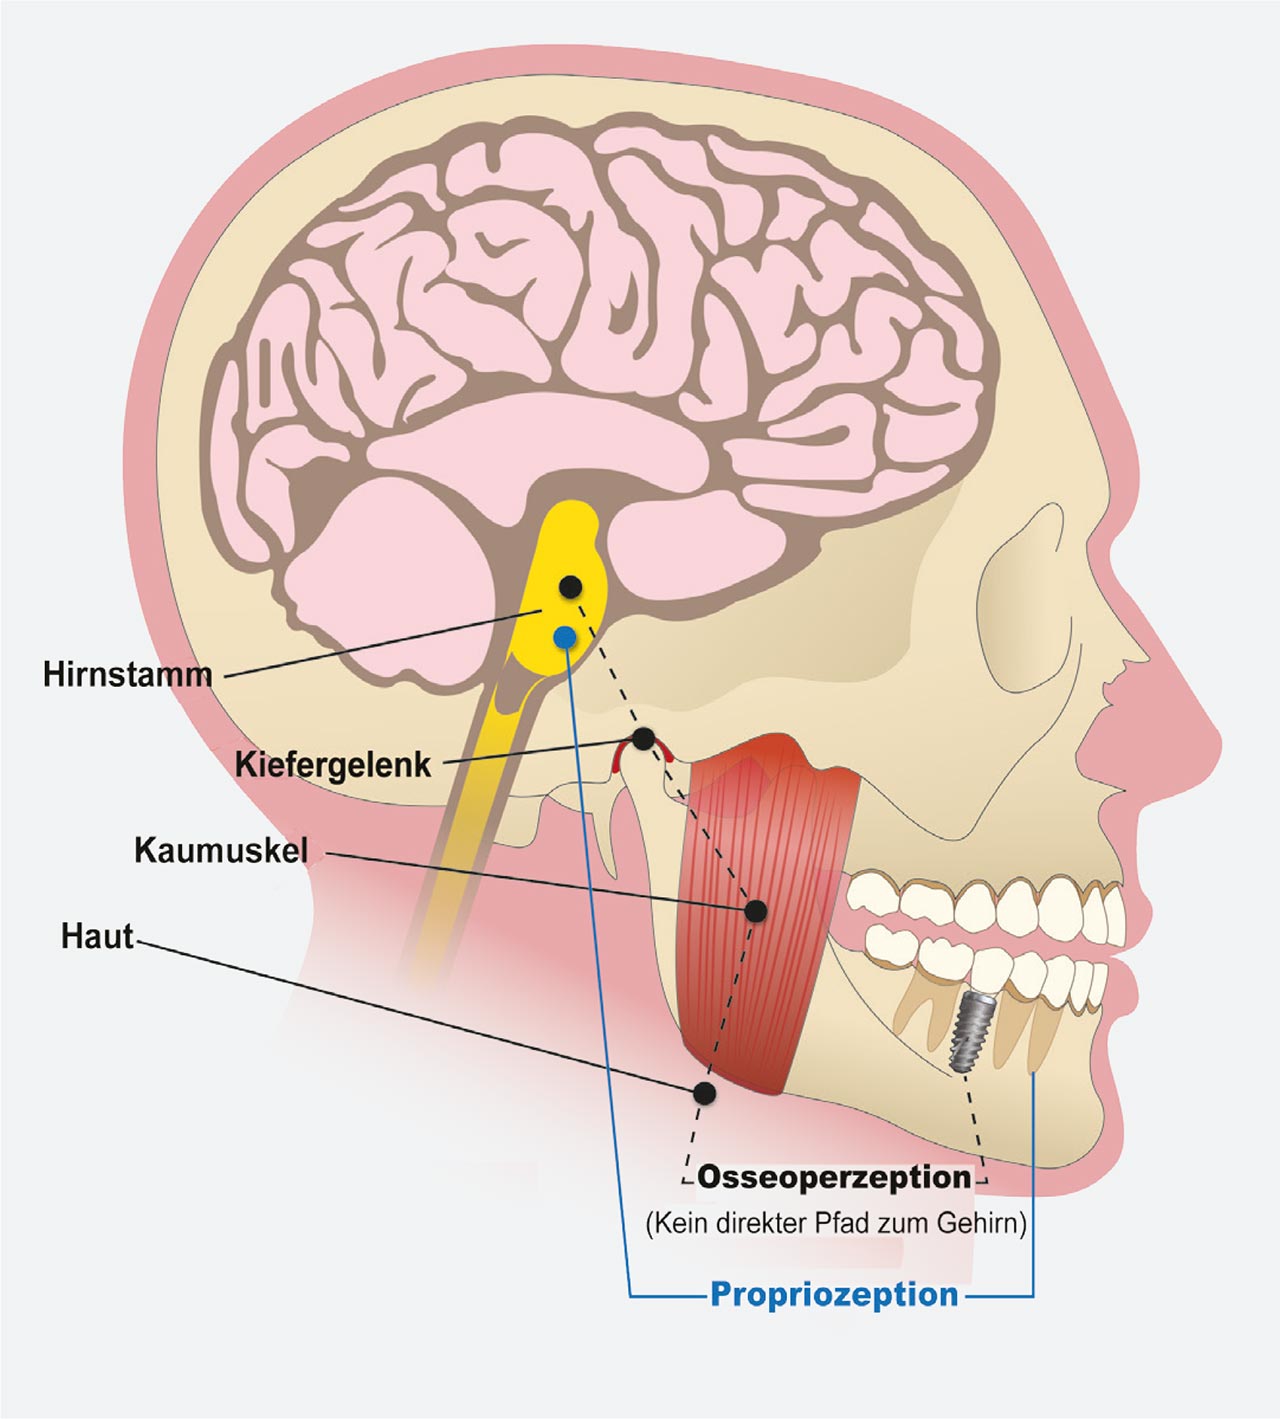 Abb. 2 Das parodontale Ligament enthält parodontale Mechanorezeptoren (PDM), die eine wichtige Quelle für taktile sensorische Inputs für das zentrale Nervensystem darstellen. Dem PDM fällt eine Schlüsselrolle bei der sensorischen Unterscheidungsfähigkeit zu. Es gibt Rückmeldung über die Größe, die Richtung und die Rate der okklusalen Last für die sensorisch e Wahrnehmung sowie die motorische Funktion des Kiefers (Propriozeption). Obwohl einem Implantat dieser Schutzmechanismus gegen die biomechanische Kraftüberlastung fehlt, erfährt es eine minimale Mechanisierung aus dem Kiefergelenk, der damit verbundenen Muskulatur und den kutanen Strukturen (Osseoperzeption). 